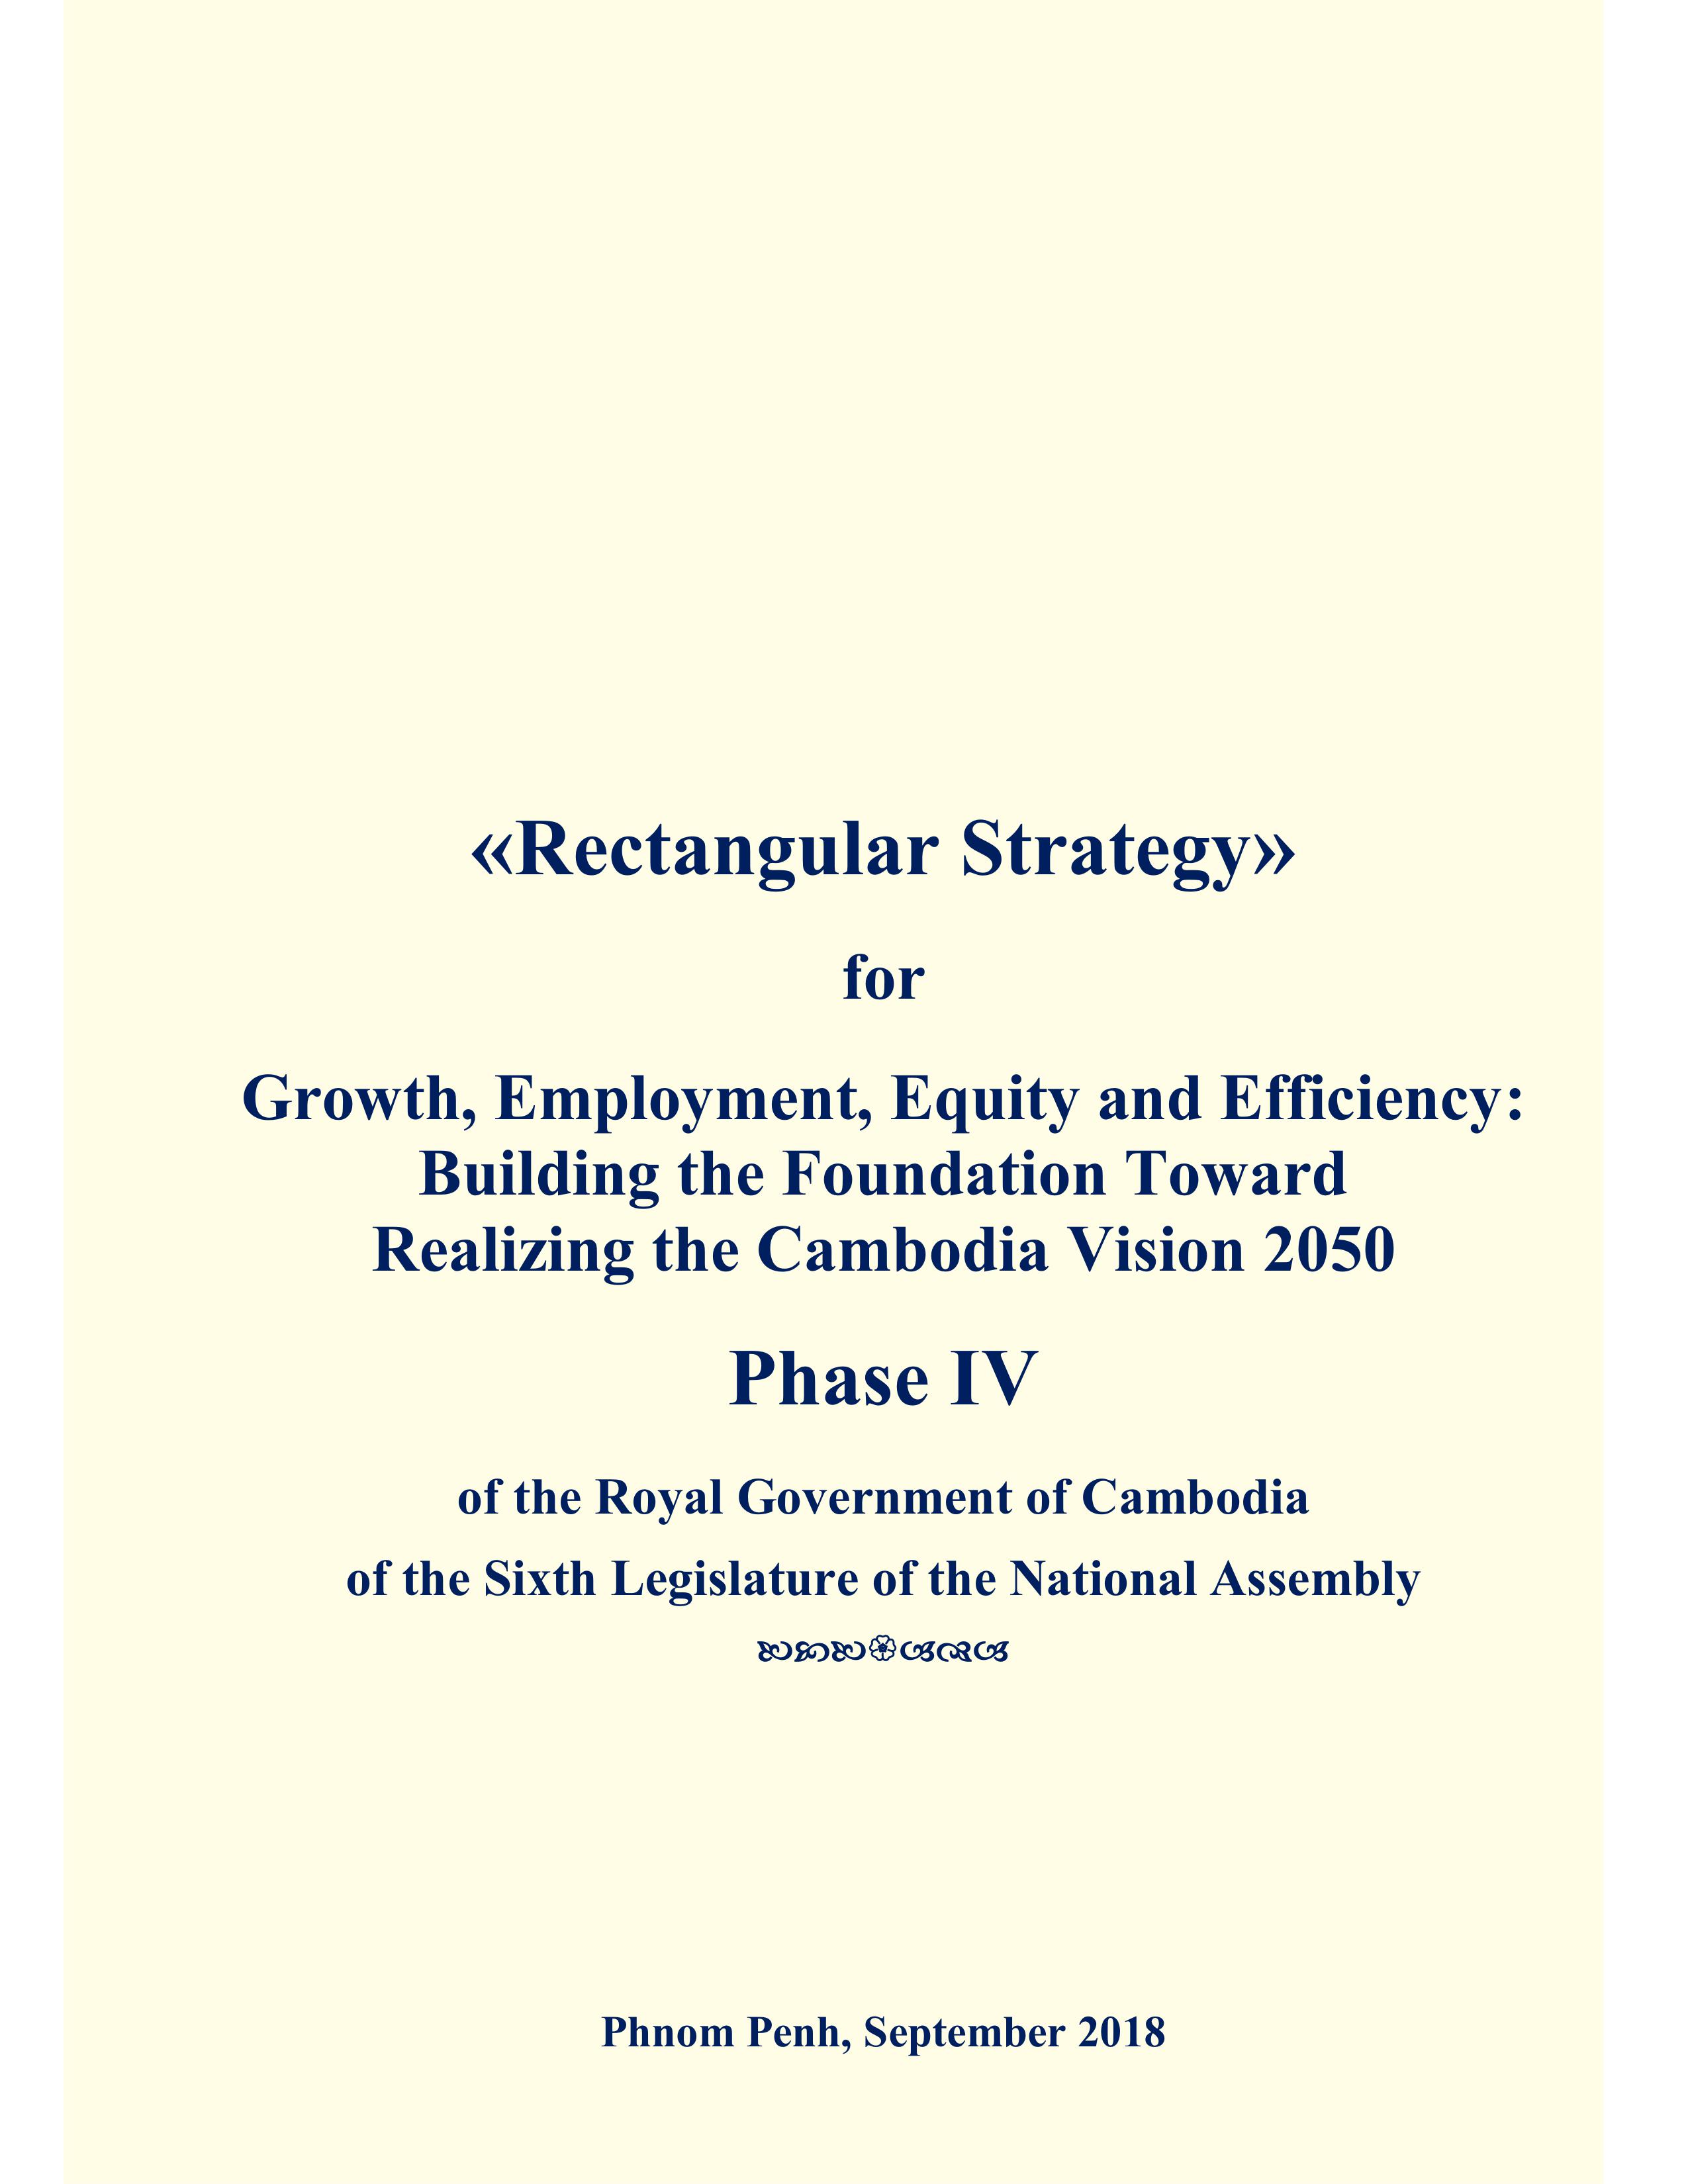 Rectangular Strategy Phase IV)